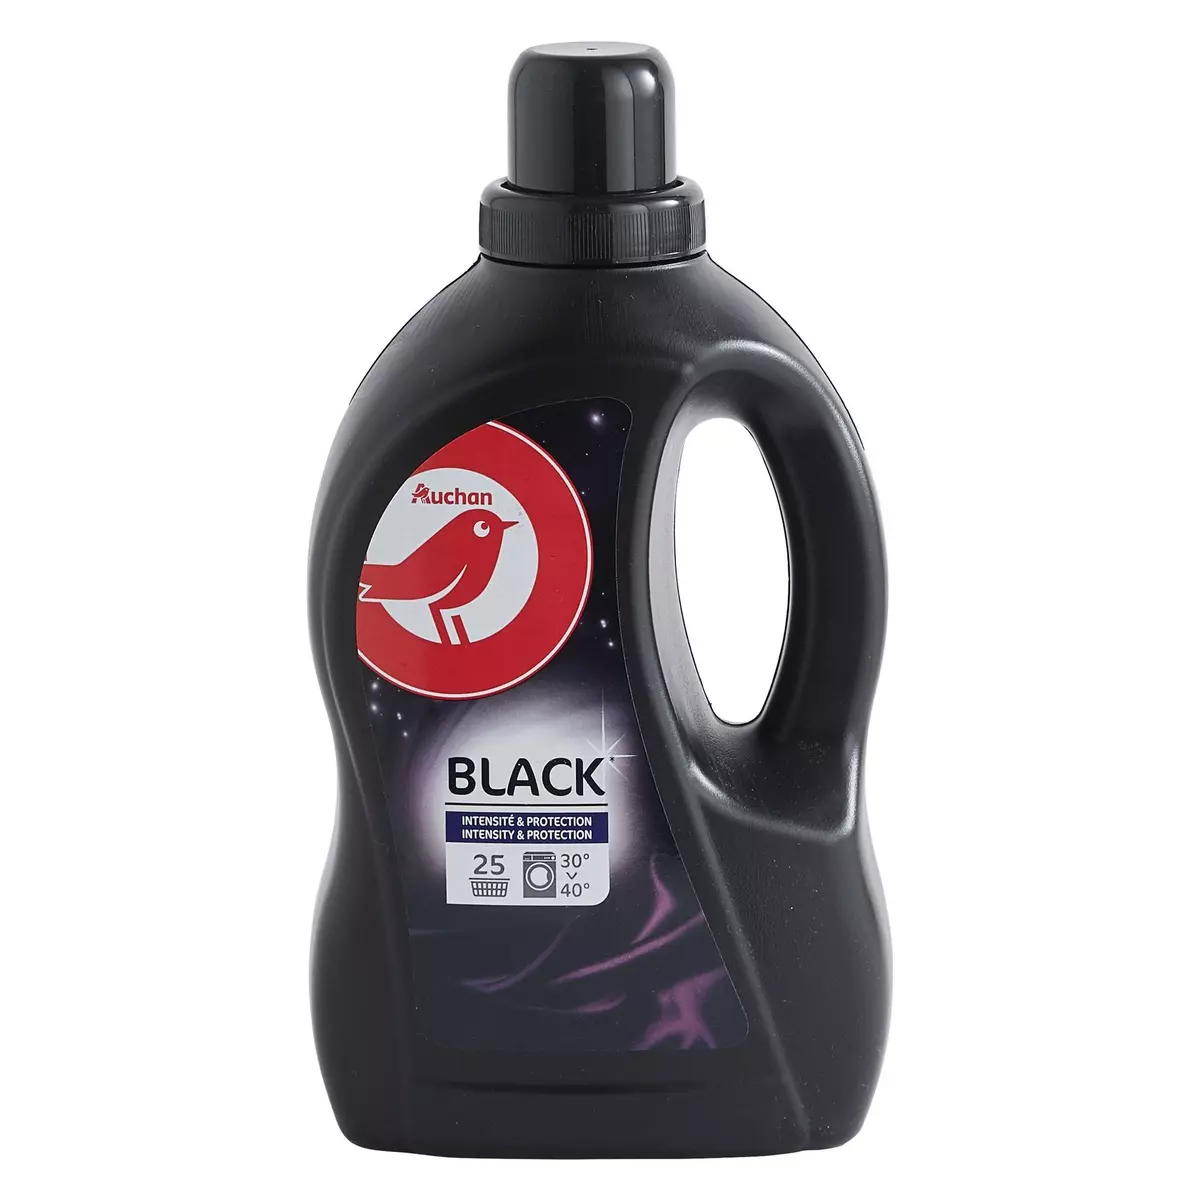 AUCHAN Lessive liquide intensité & protection linge noir 25